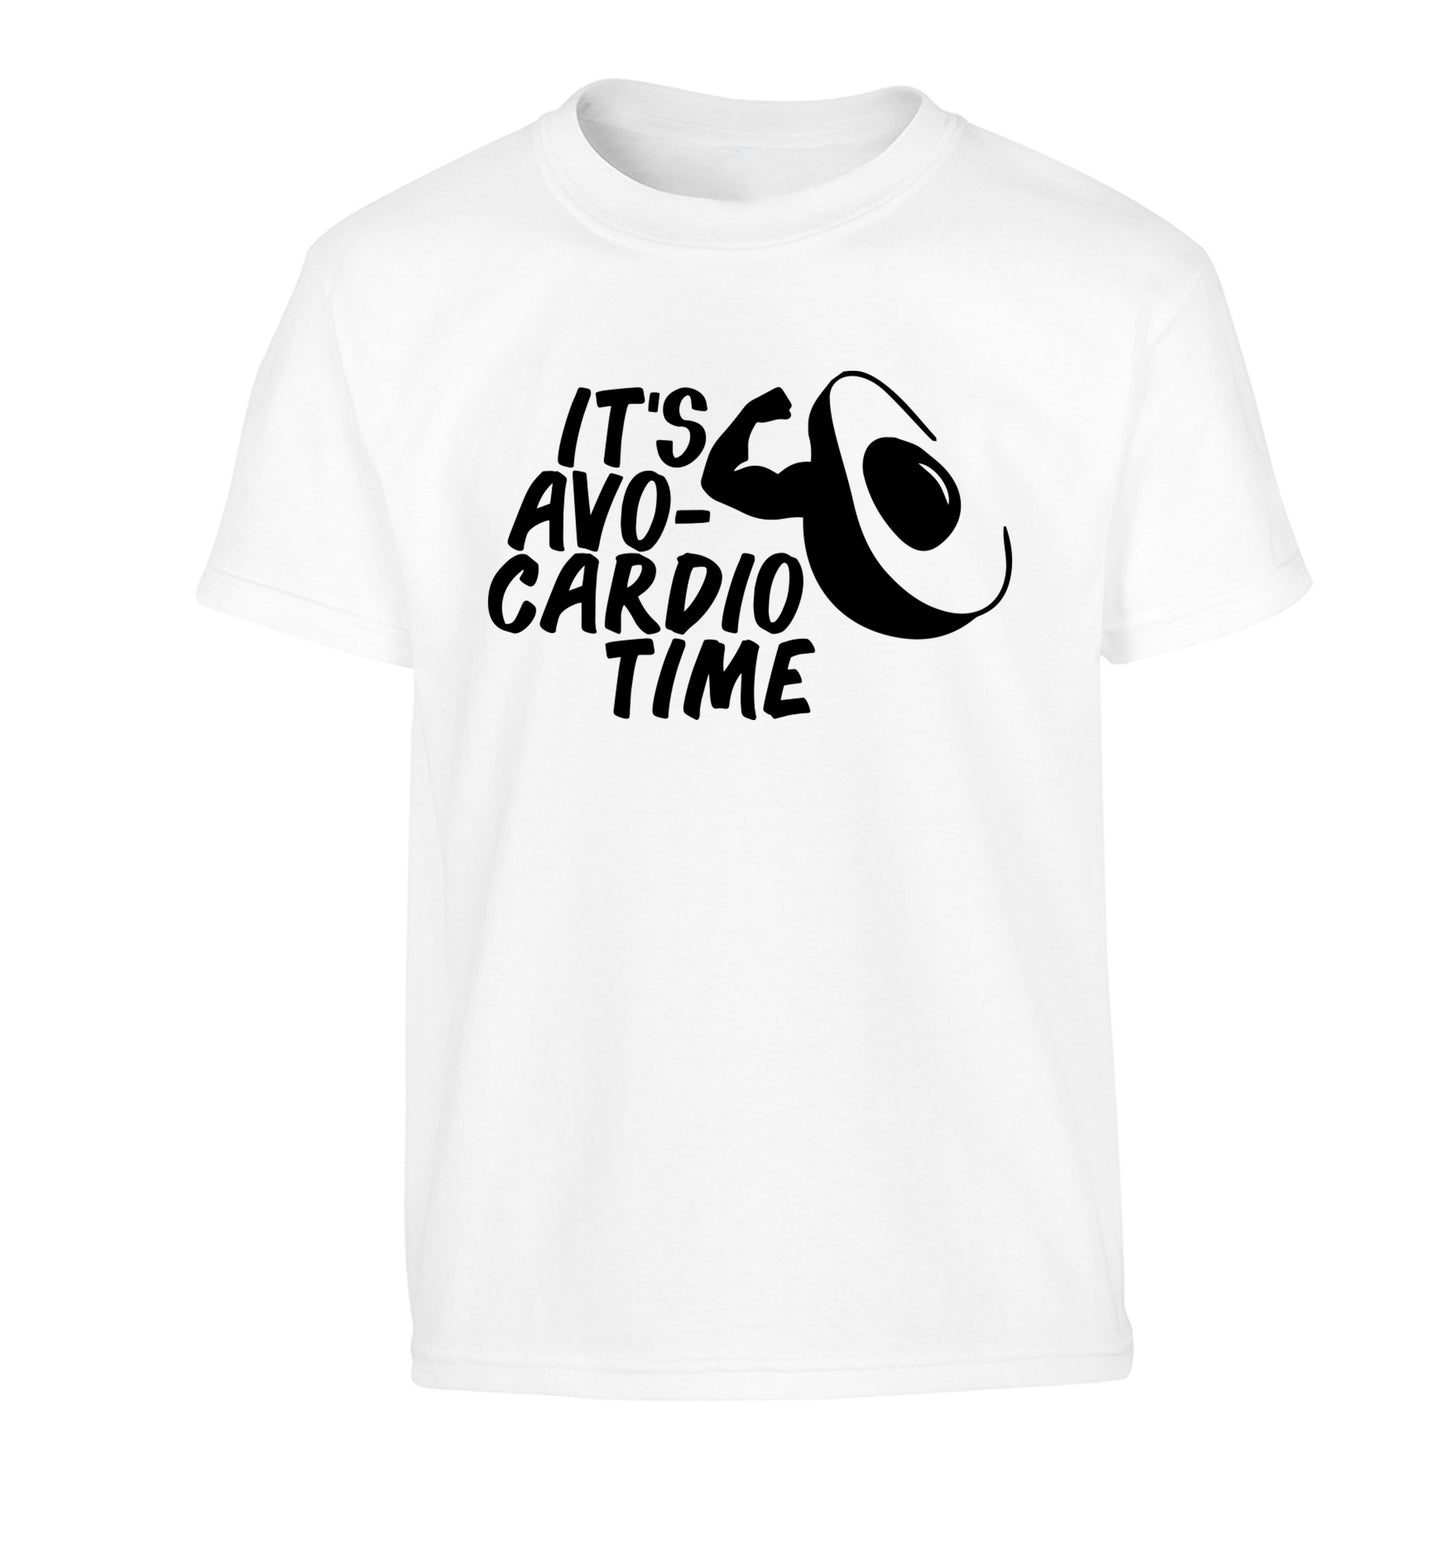 It's avo-cardio time Children's white Tshirt 12-14 Years